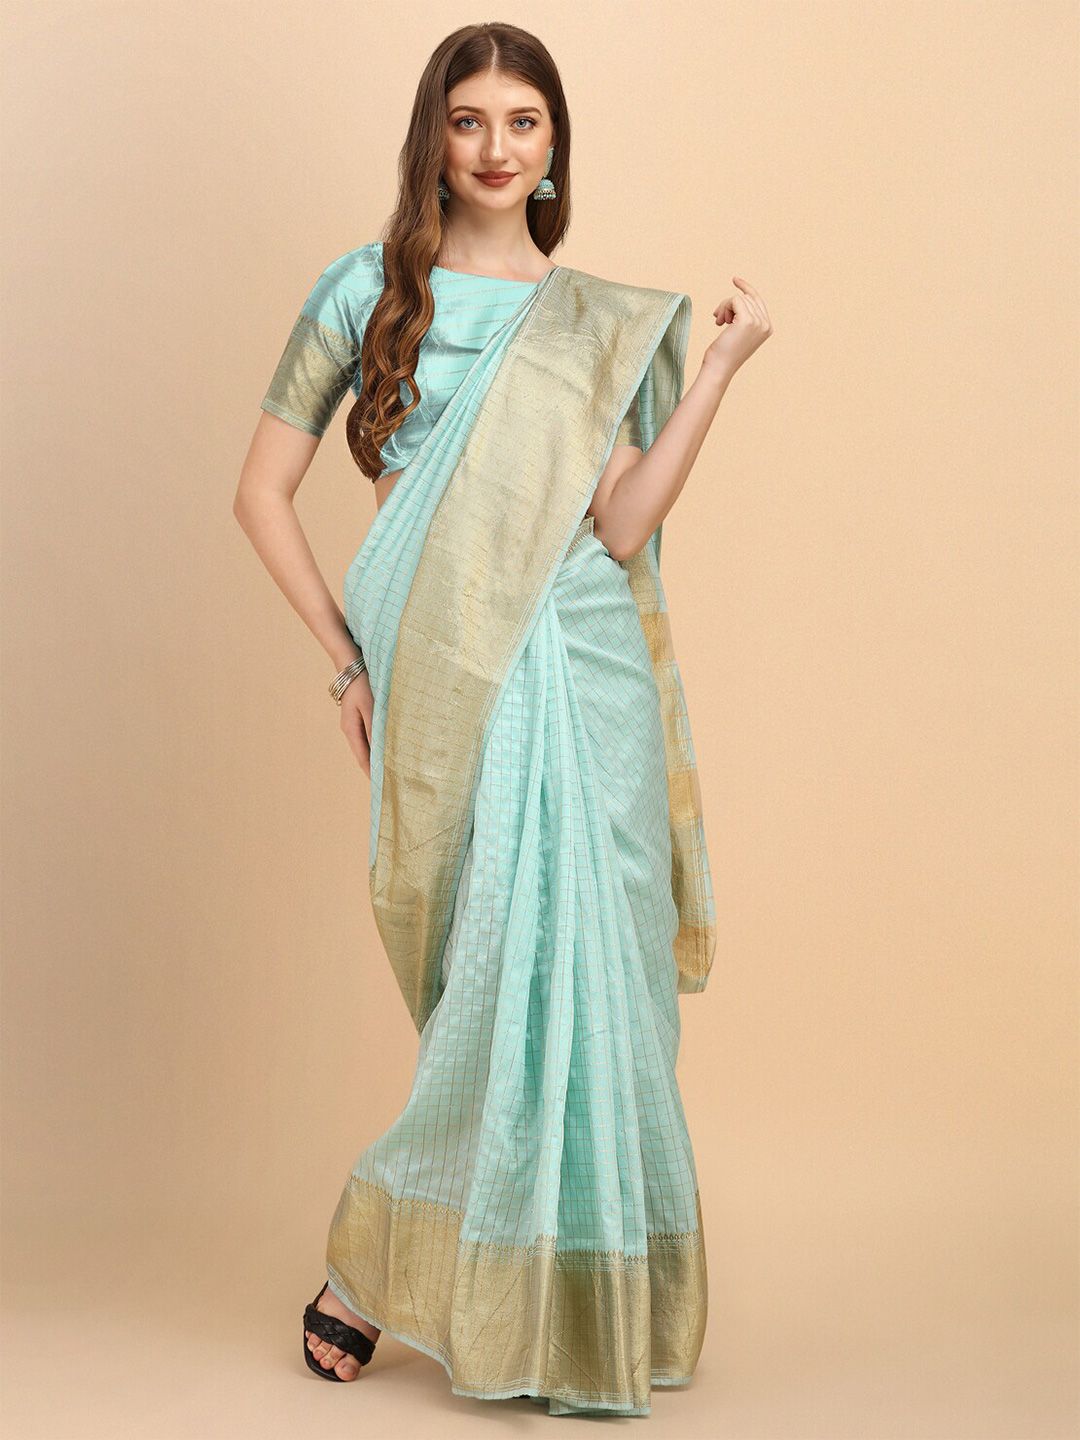 Jinax Sea Green & Gold-Toned Woven Design Zari Pure Silk Banarasi Saree Price in India